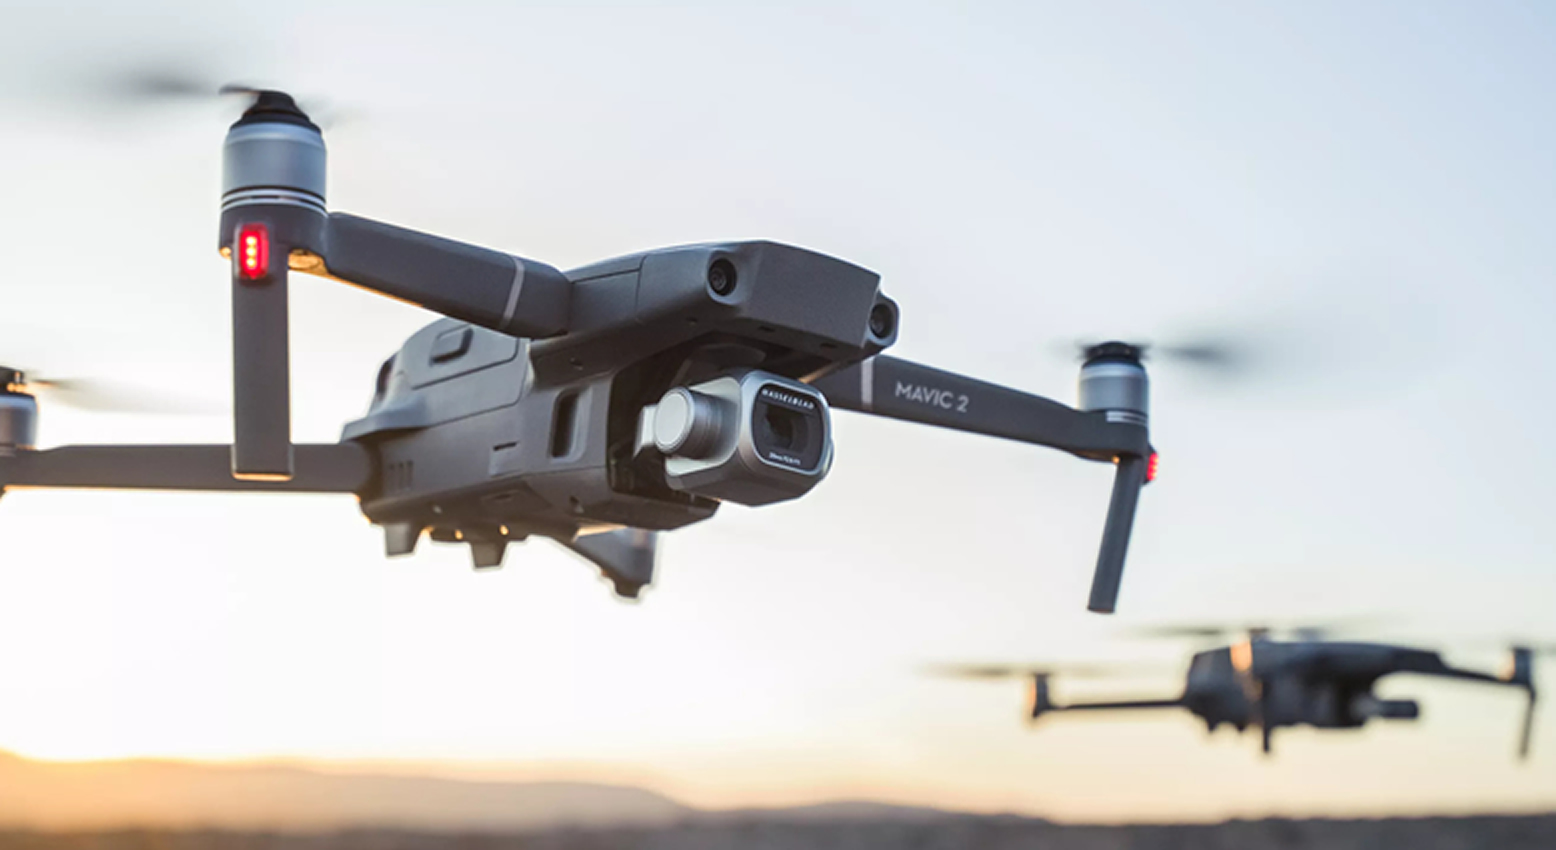  DJI MAVIC 2: La próxima generación de cámaras voladoras